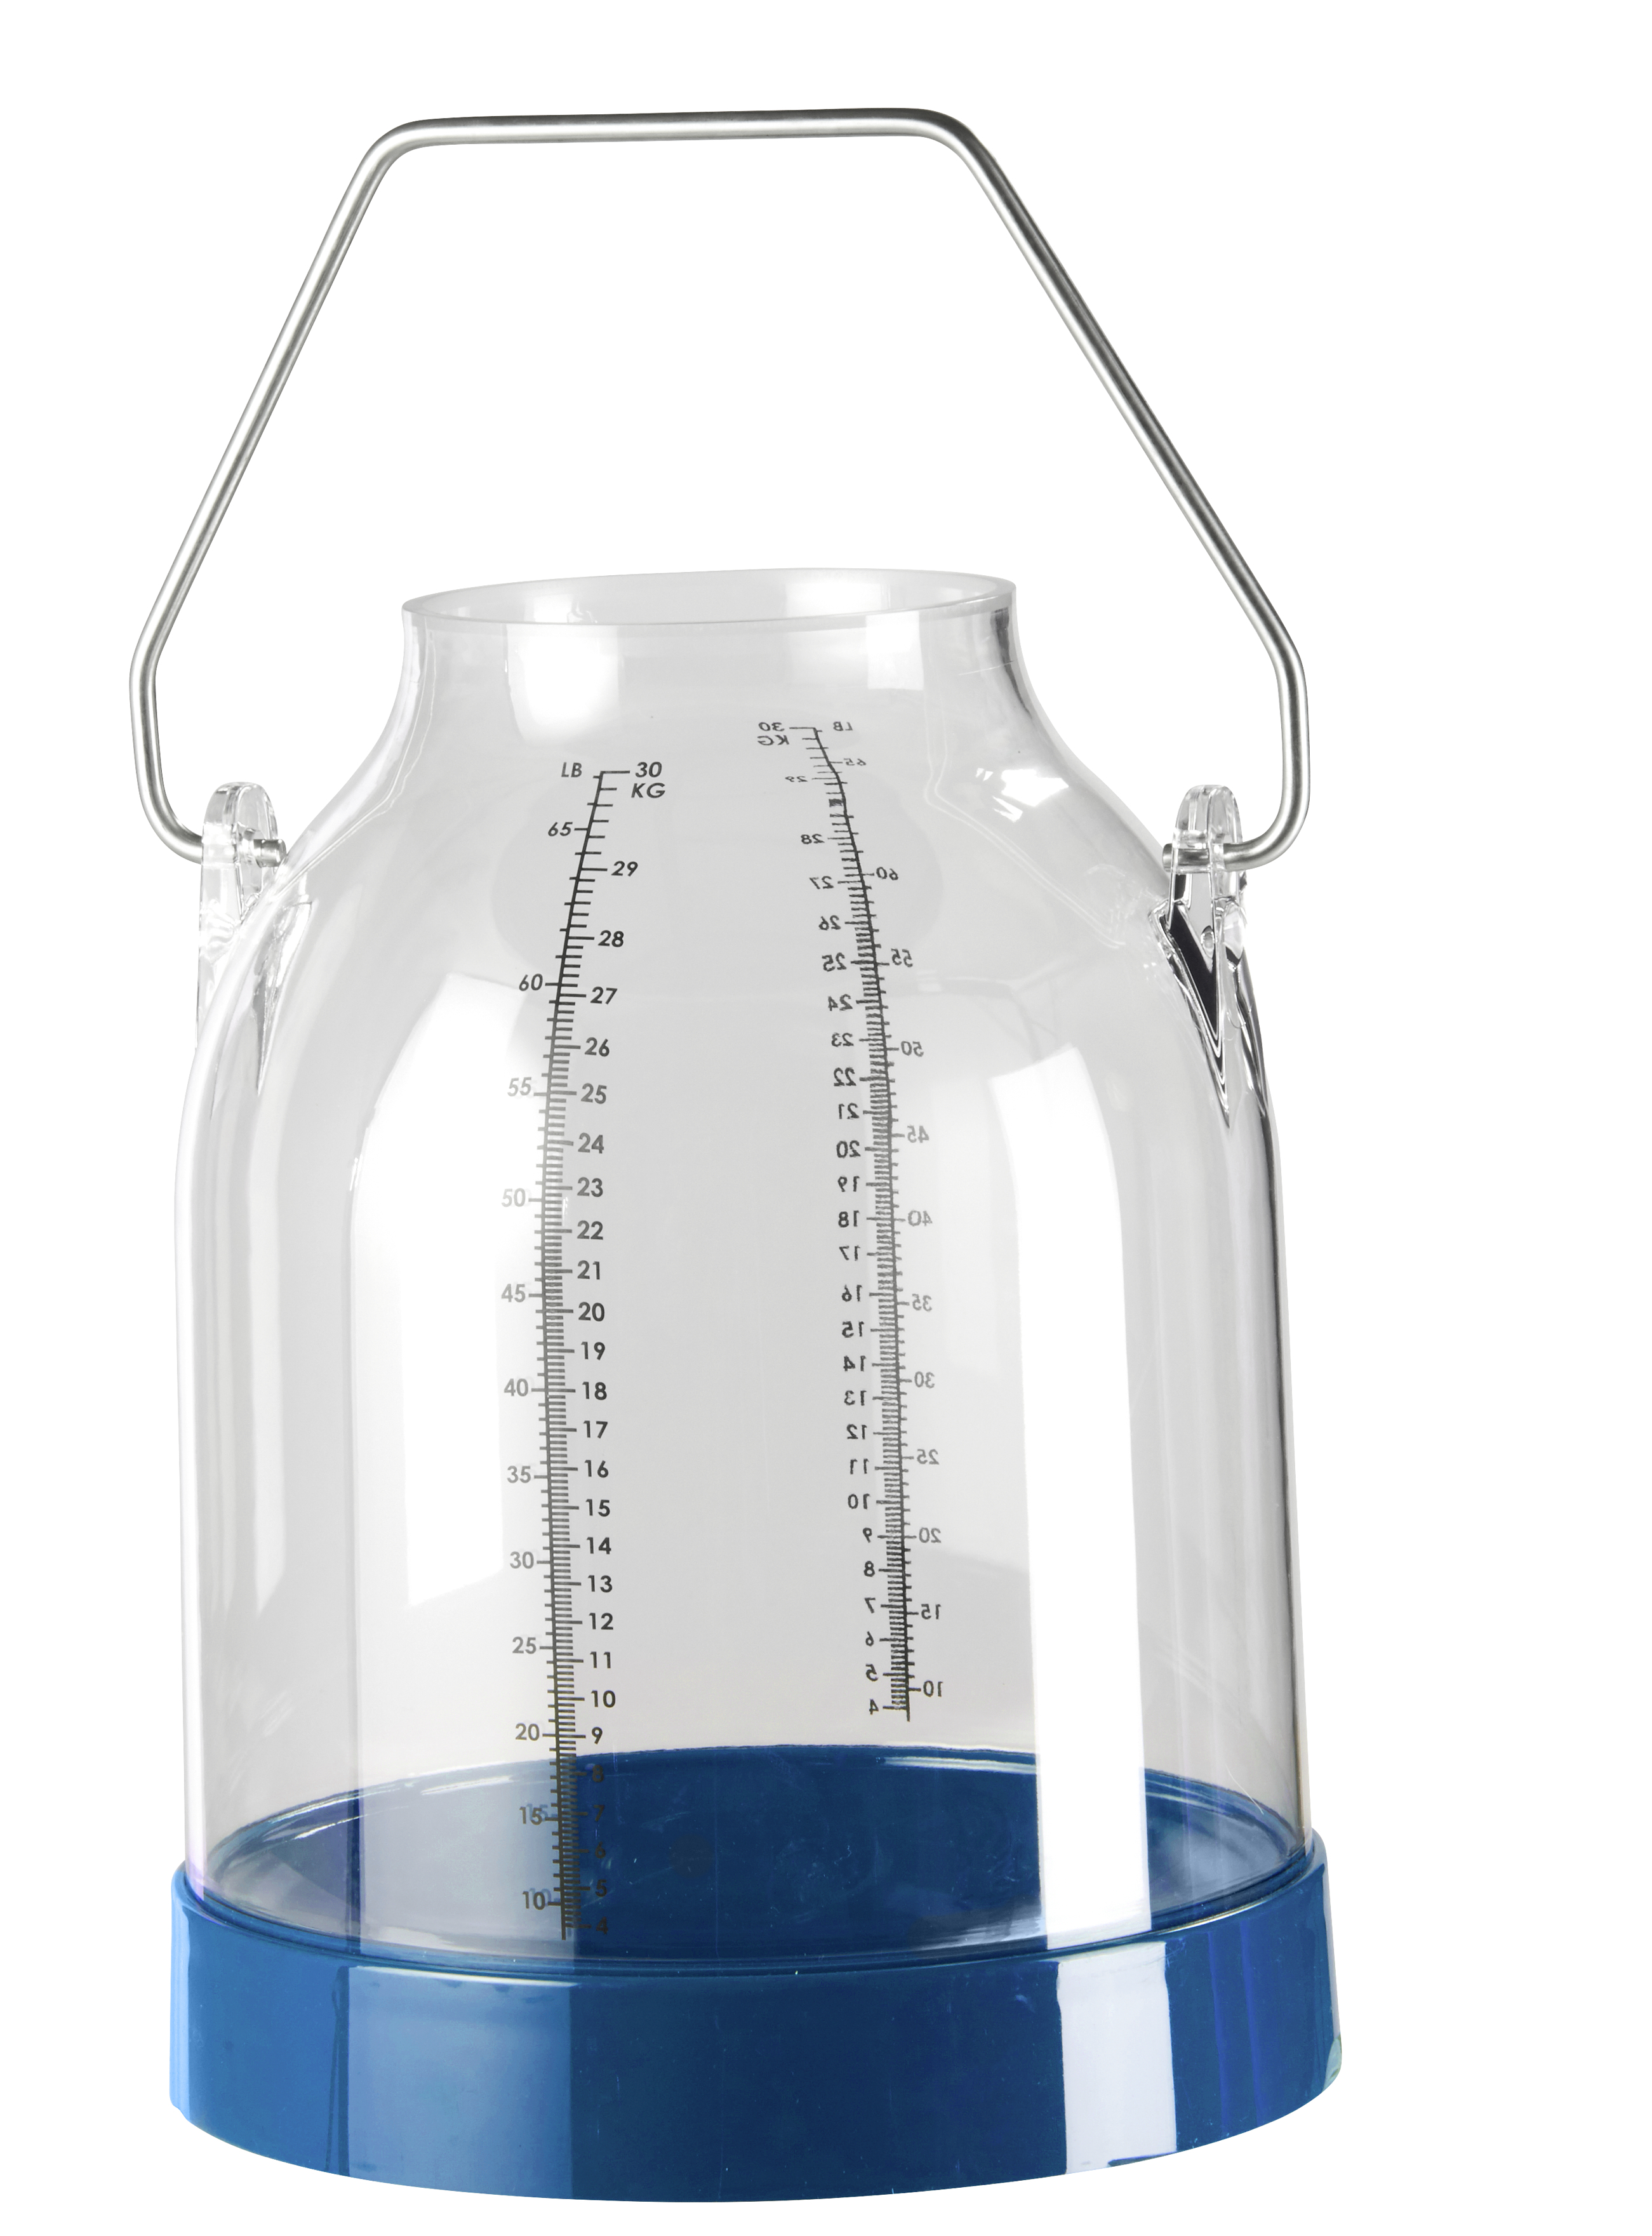 Kunststoff Melkeimer, 30 Liter, blau, Bügelhöhe 117 mm für DeLaval-Deckel